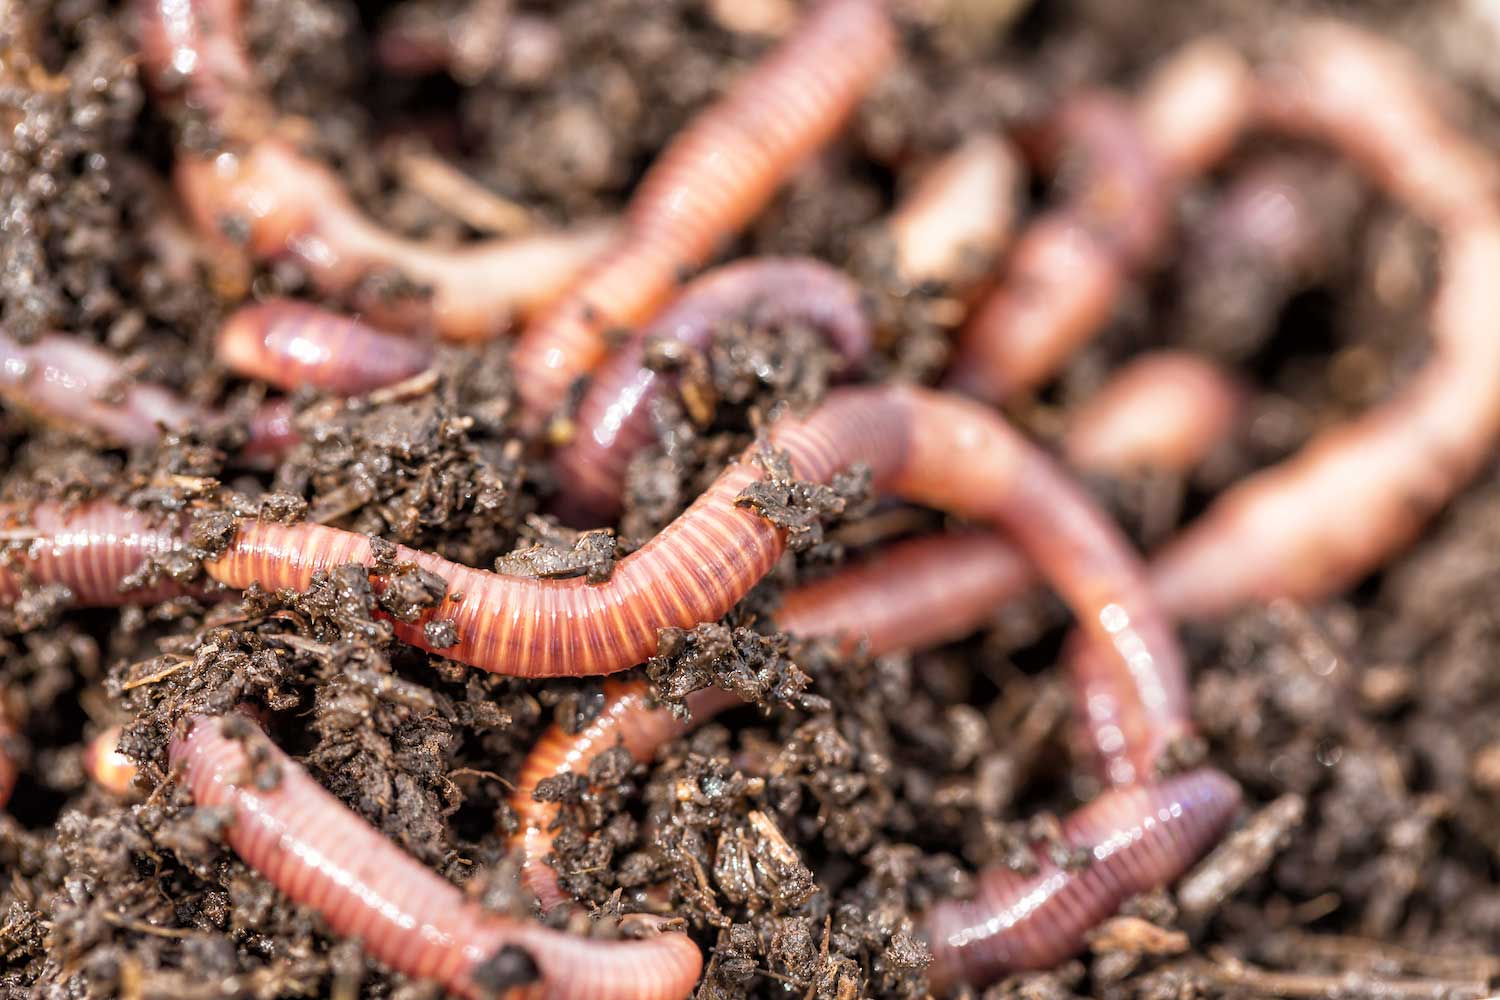 Earthworms in soil.